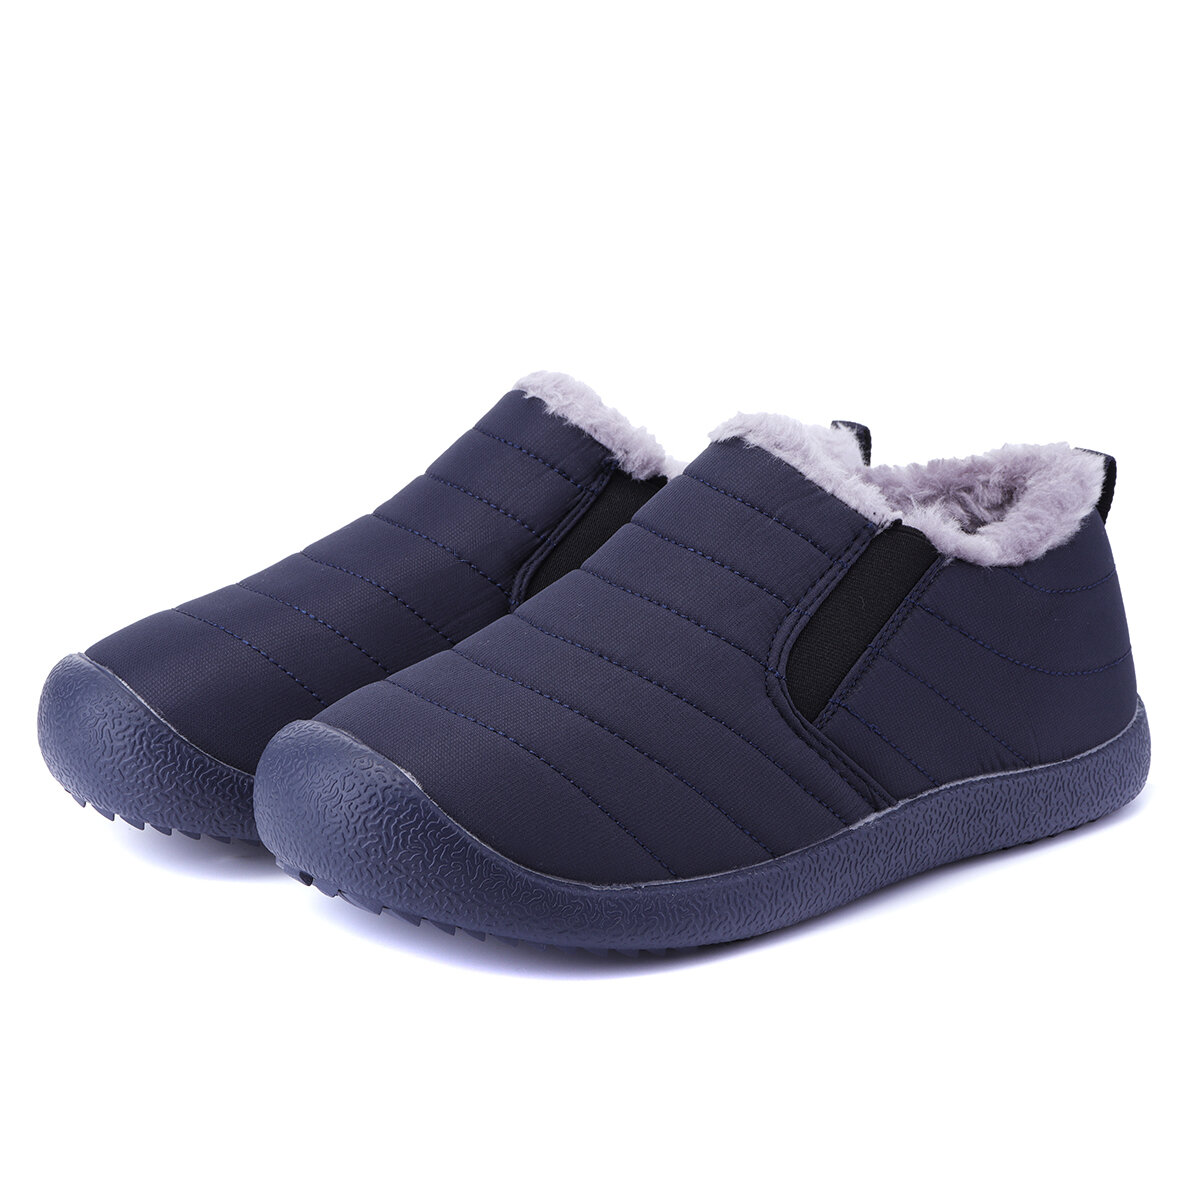 Homens Inverno Quente Tornozelo Botas Forro de Peles À Prova D 'Água Caminhadas Sapatos Confortáveis Sapatos Martin Respirável